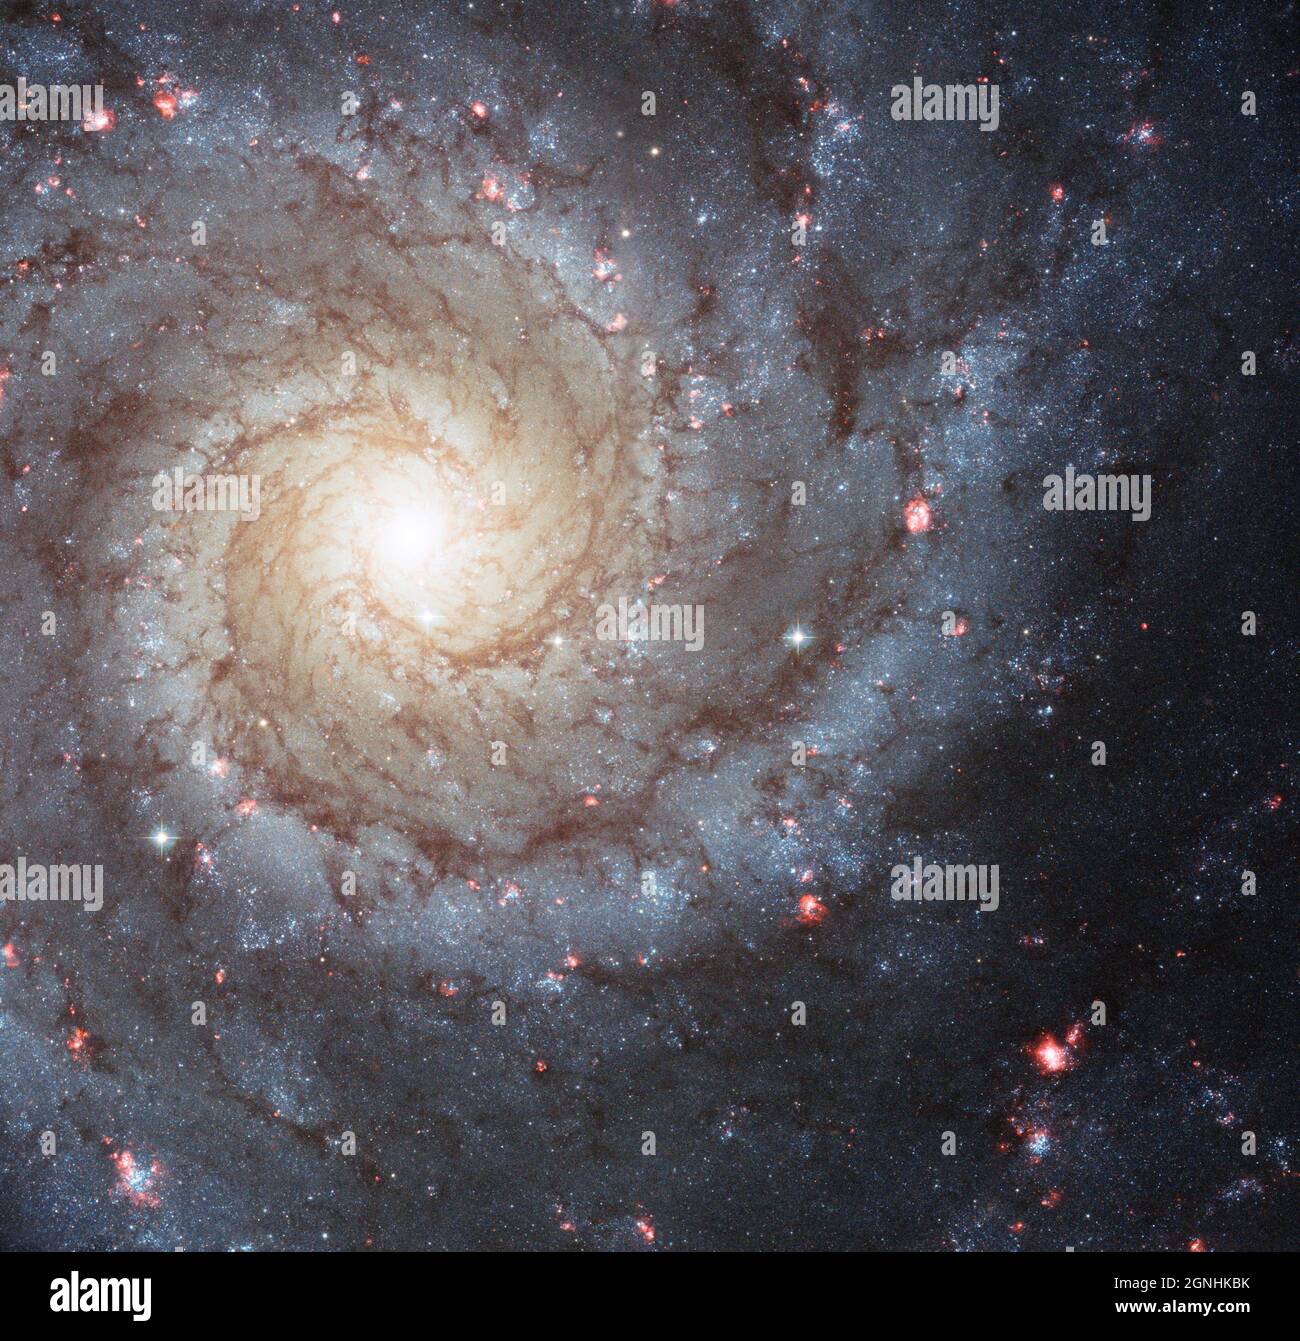 Messier 74, chiamato anche NGC 628, è un esempio stupefacente di una galassia a spirale 'Grand-design' che è visto dagli osservatori della Terra quasi faccia a faccia. I suoi bracci a spirale perfettamente simmetrici emanano dal nucleo centrale e sono punteggiati da gruppi di giovani stelle blu e da regioni rosa incandescenti di idrogeno ionizzato . Fonte immagine NASA/ESA Hubble Space Telescope Foto Stock